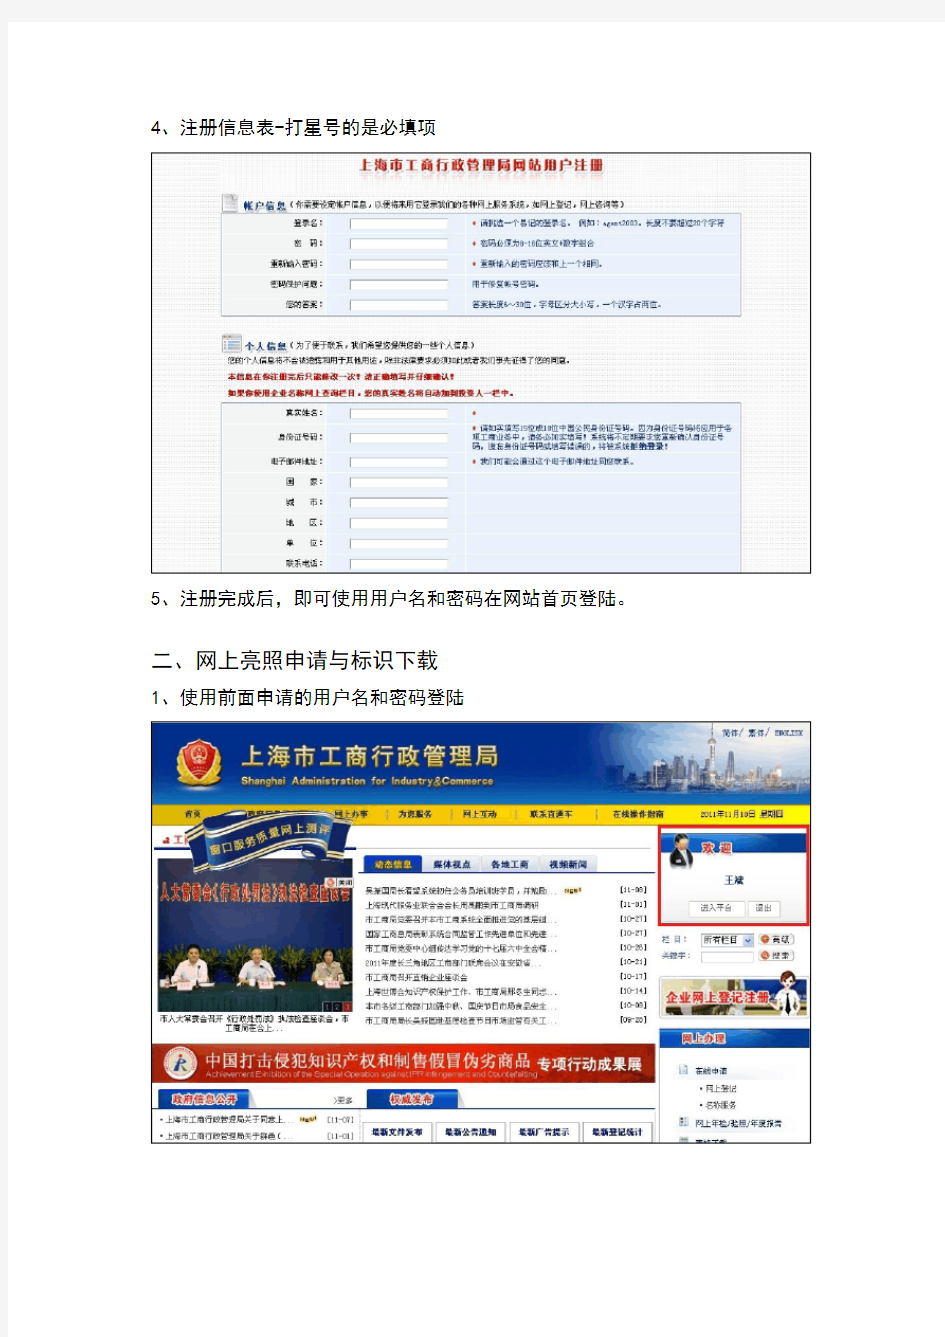 上海市工商局网上亮照系统使用指南